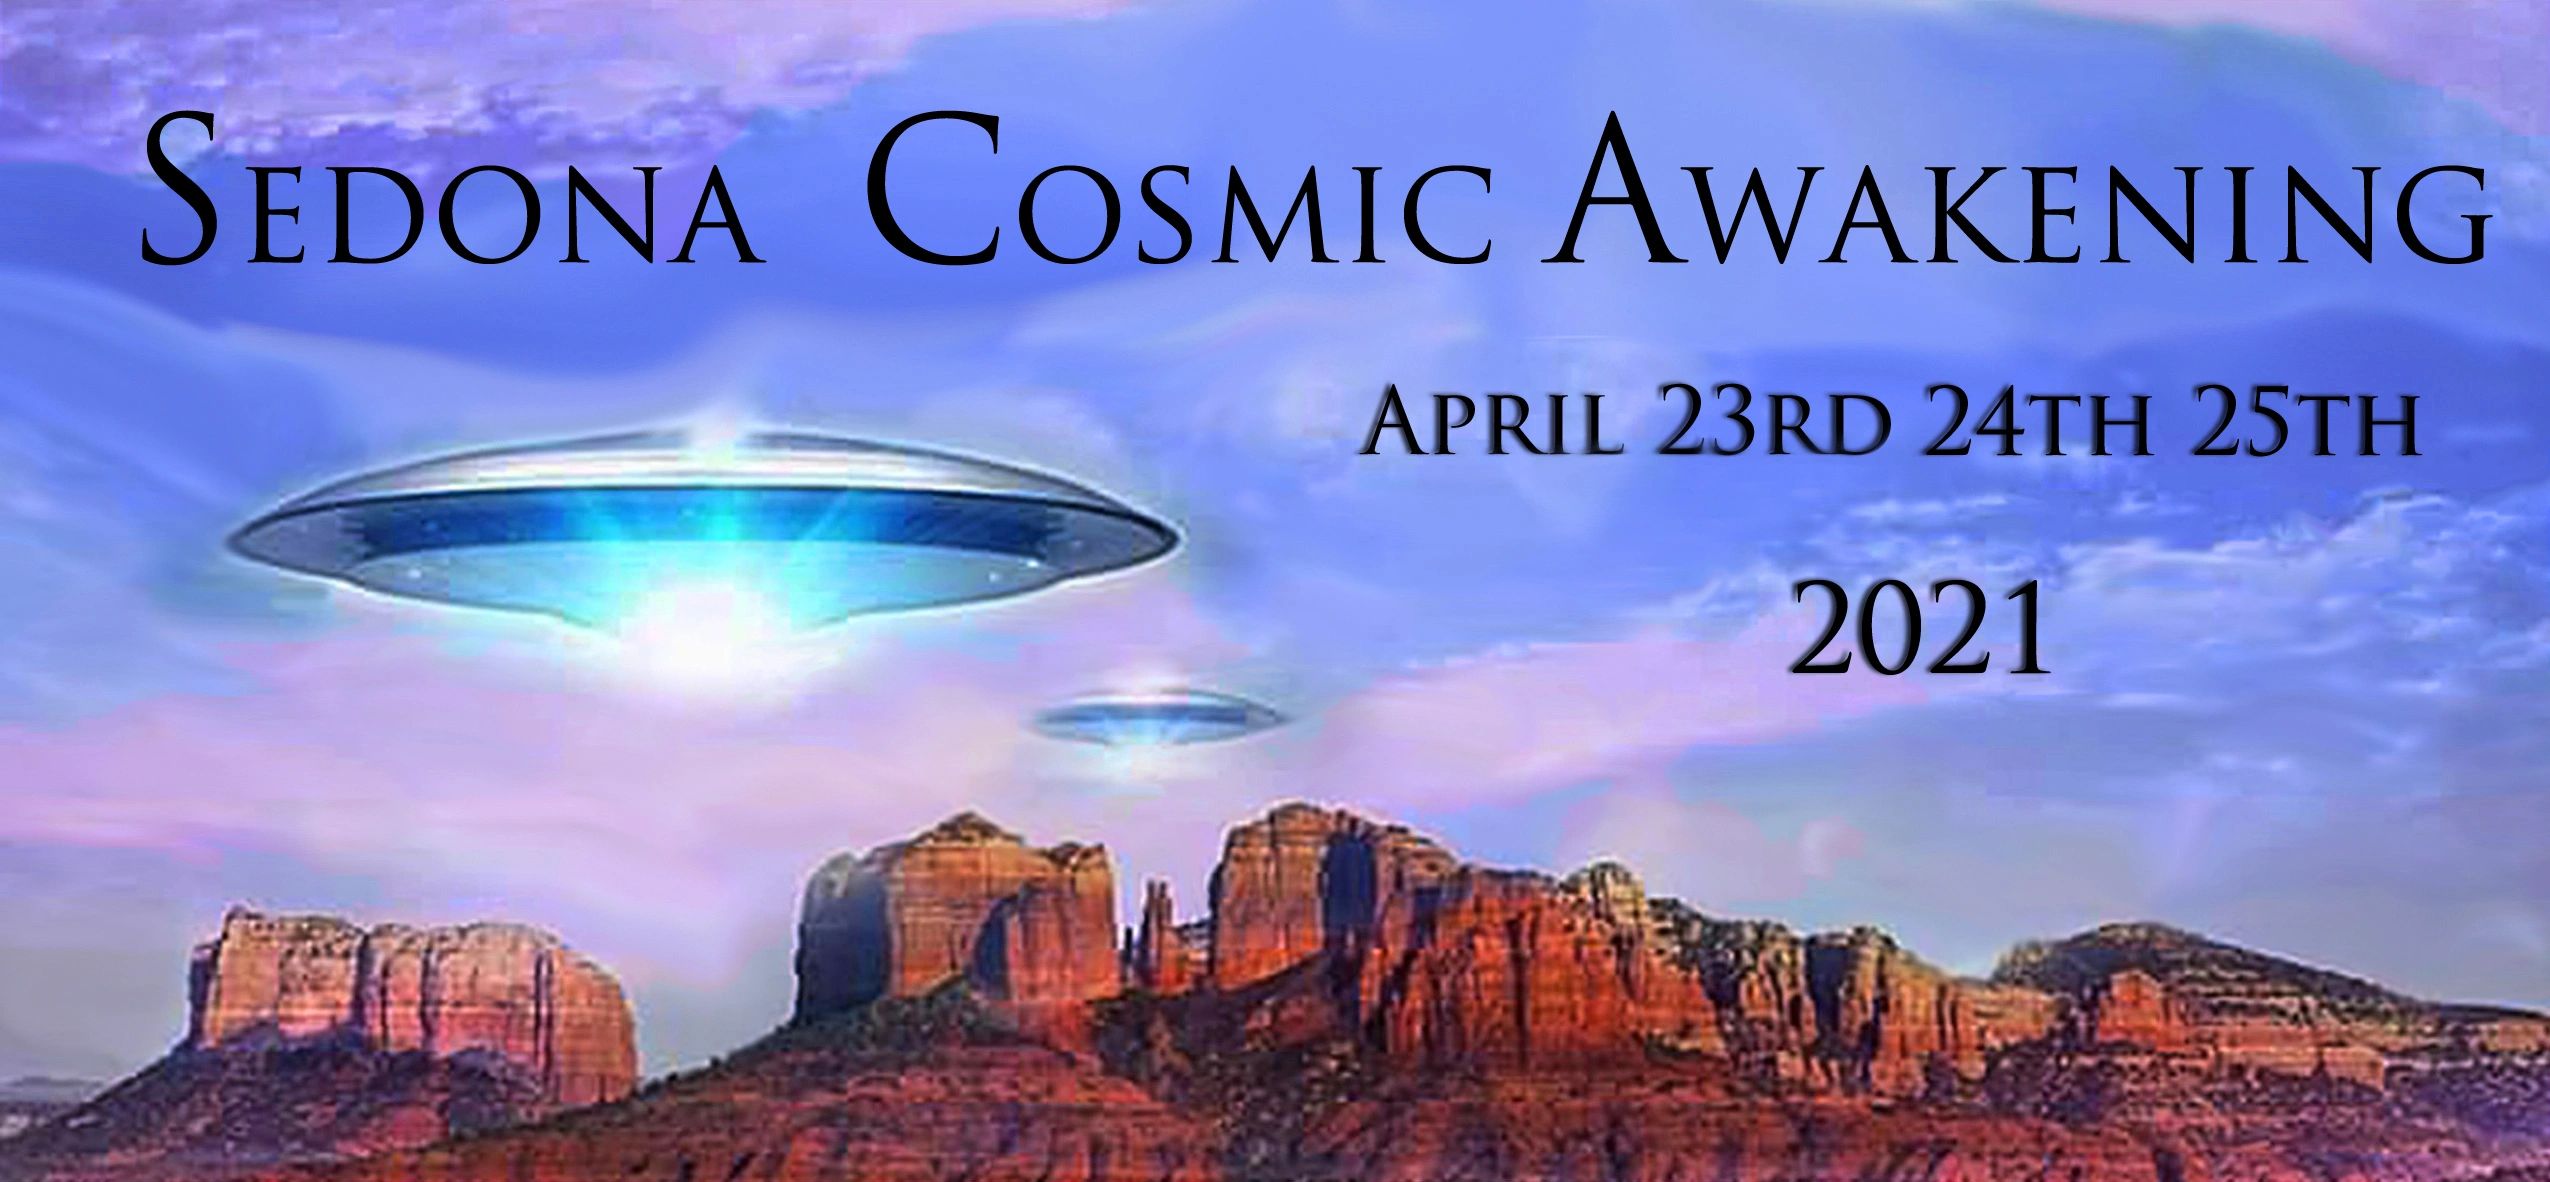 2021 Sedona Cosmic Awakening Event